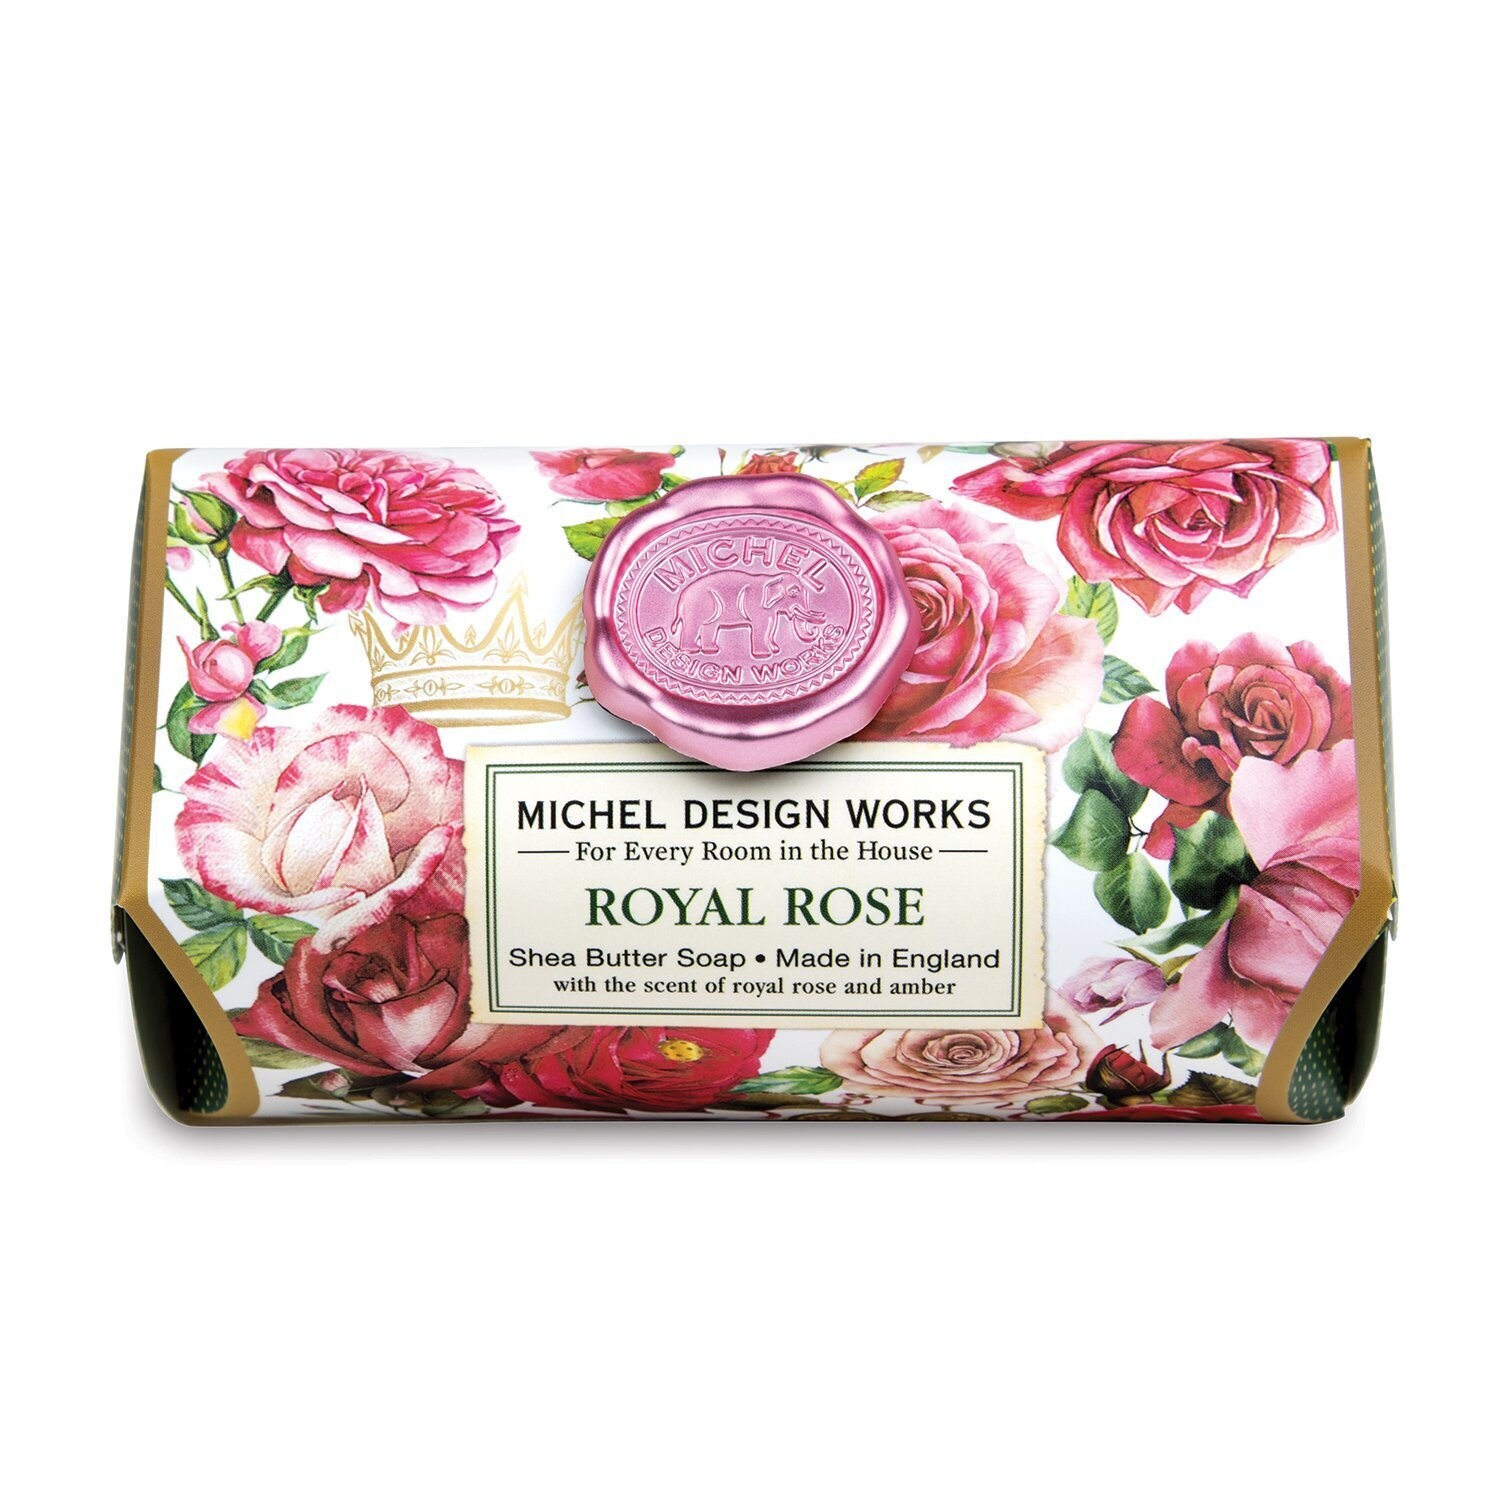 Royal Rose Bath Soap Bar